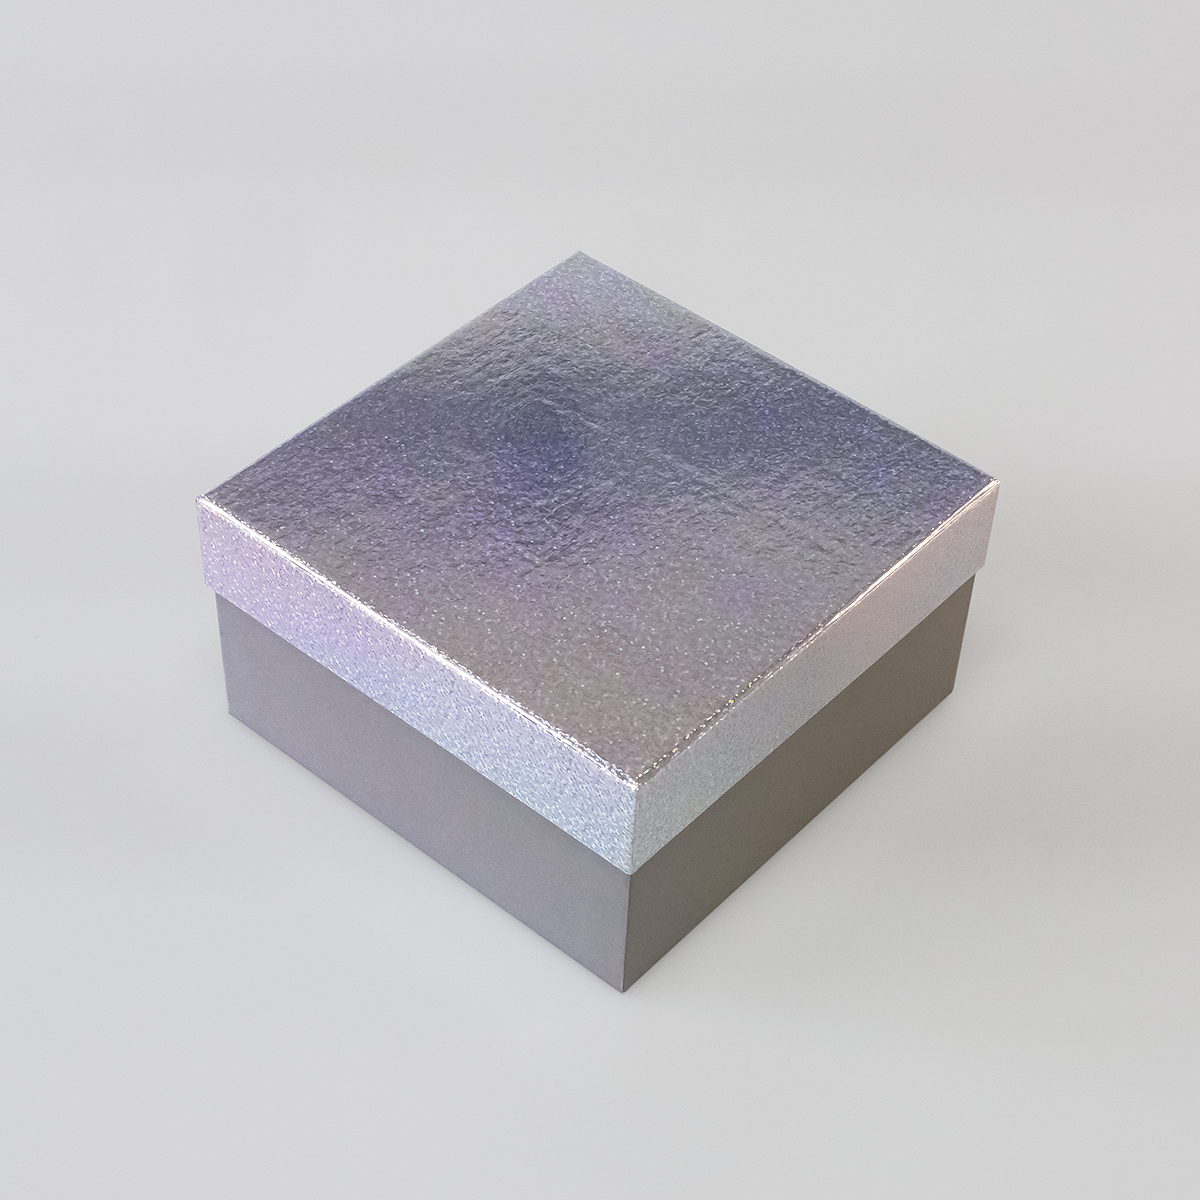 Подарочная коробка крышка-дно, 19 x 19 x 10,5 см. "Блеск", разноцветный, серый